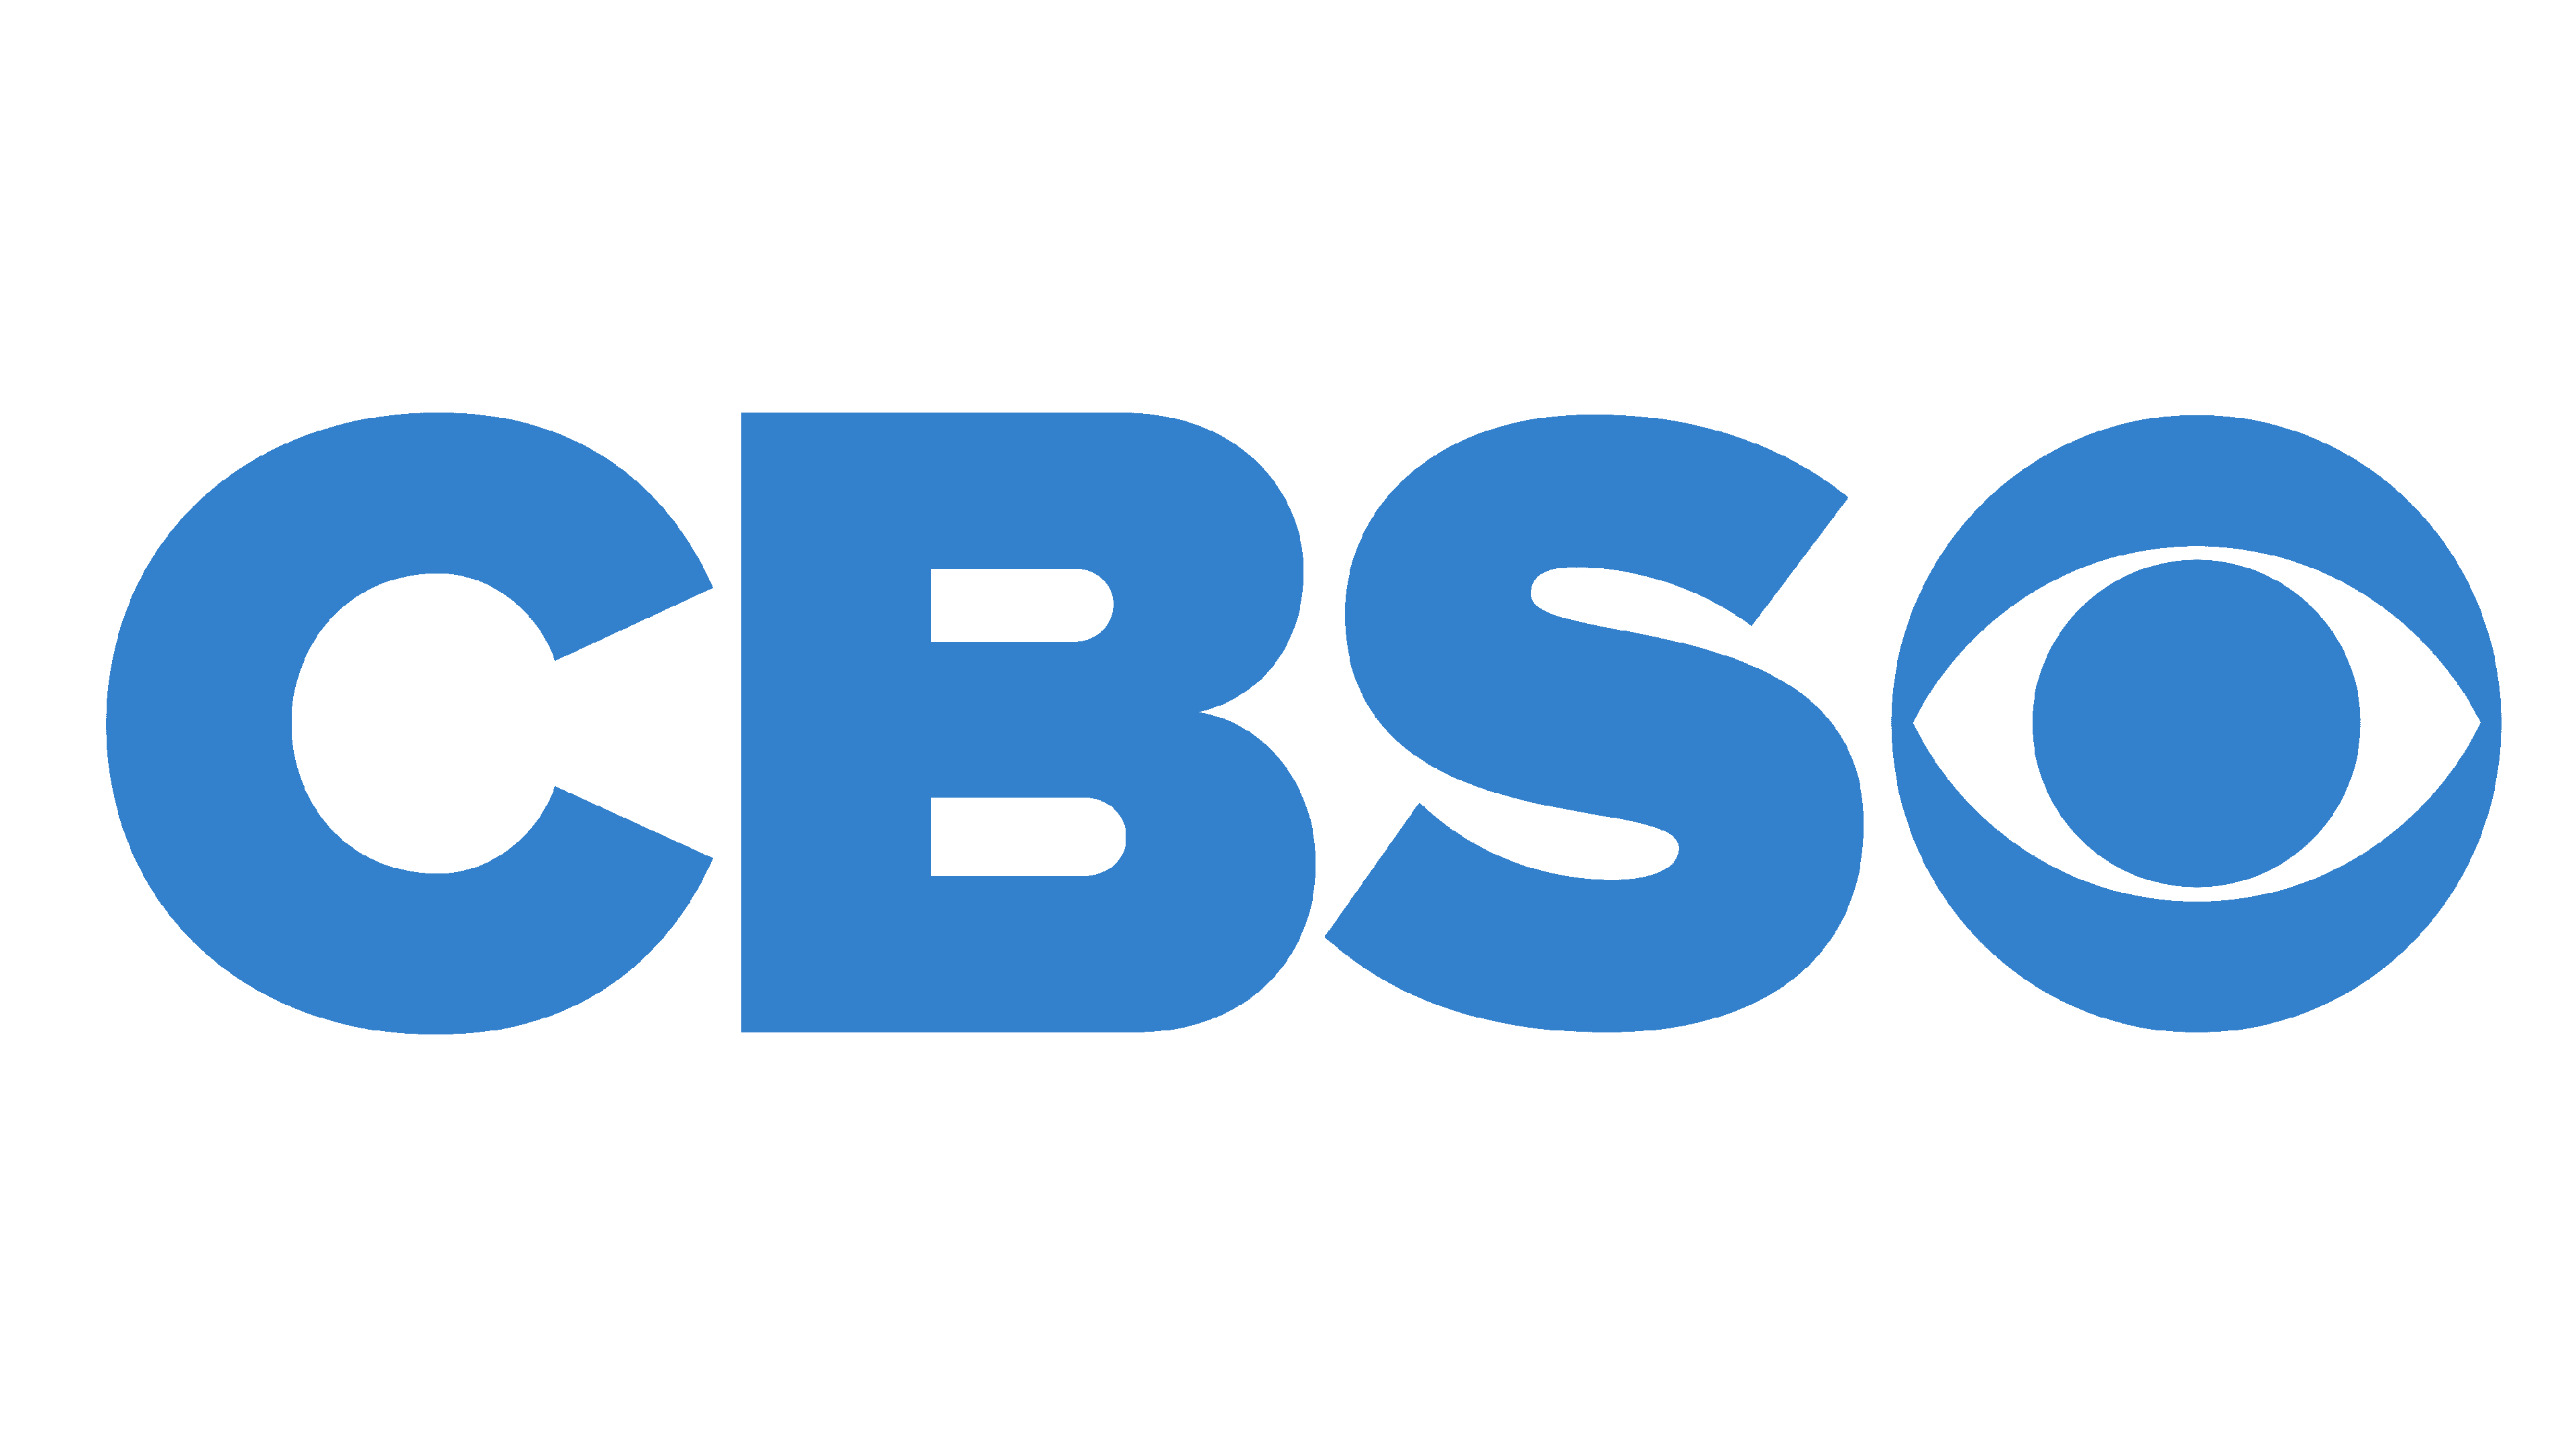 cbs eye logo 1951